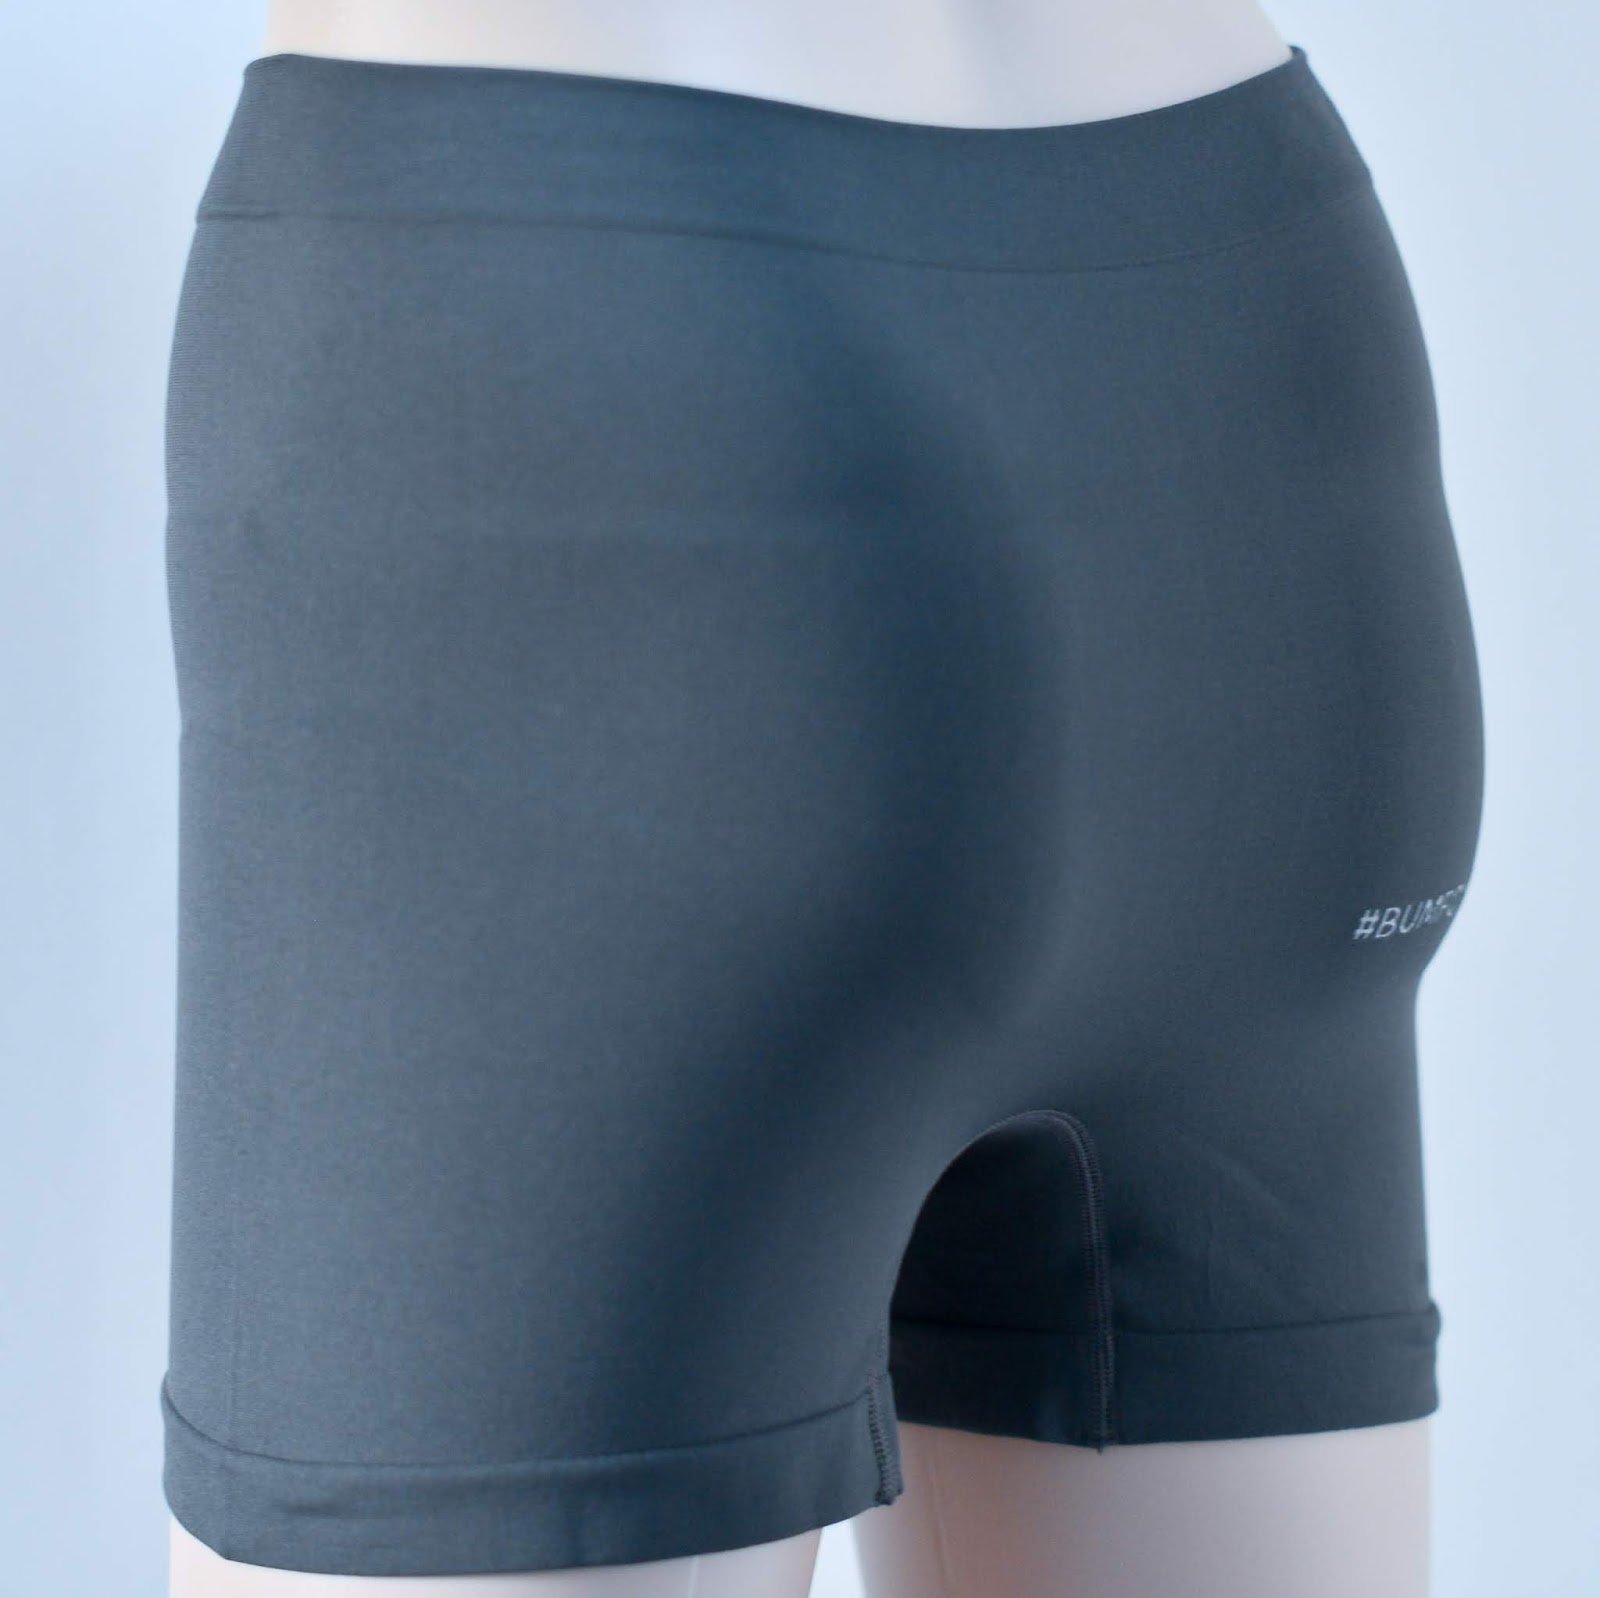 Greenyarn's Blog: Bamboo Charcoal Flatulence Underwear for Seniors